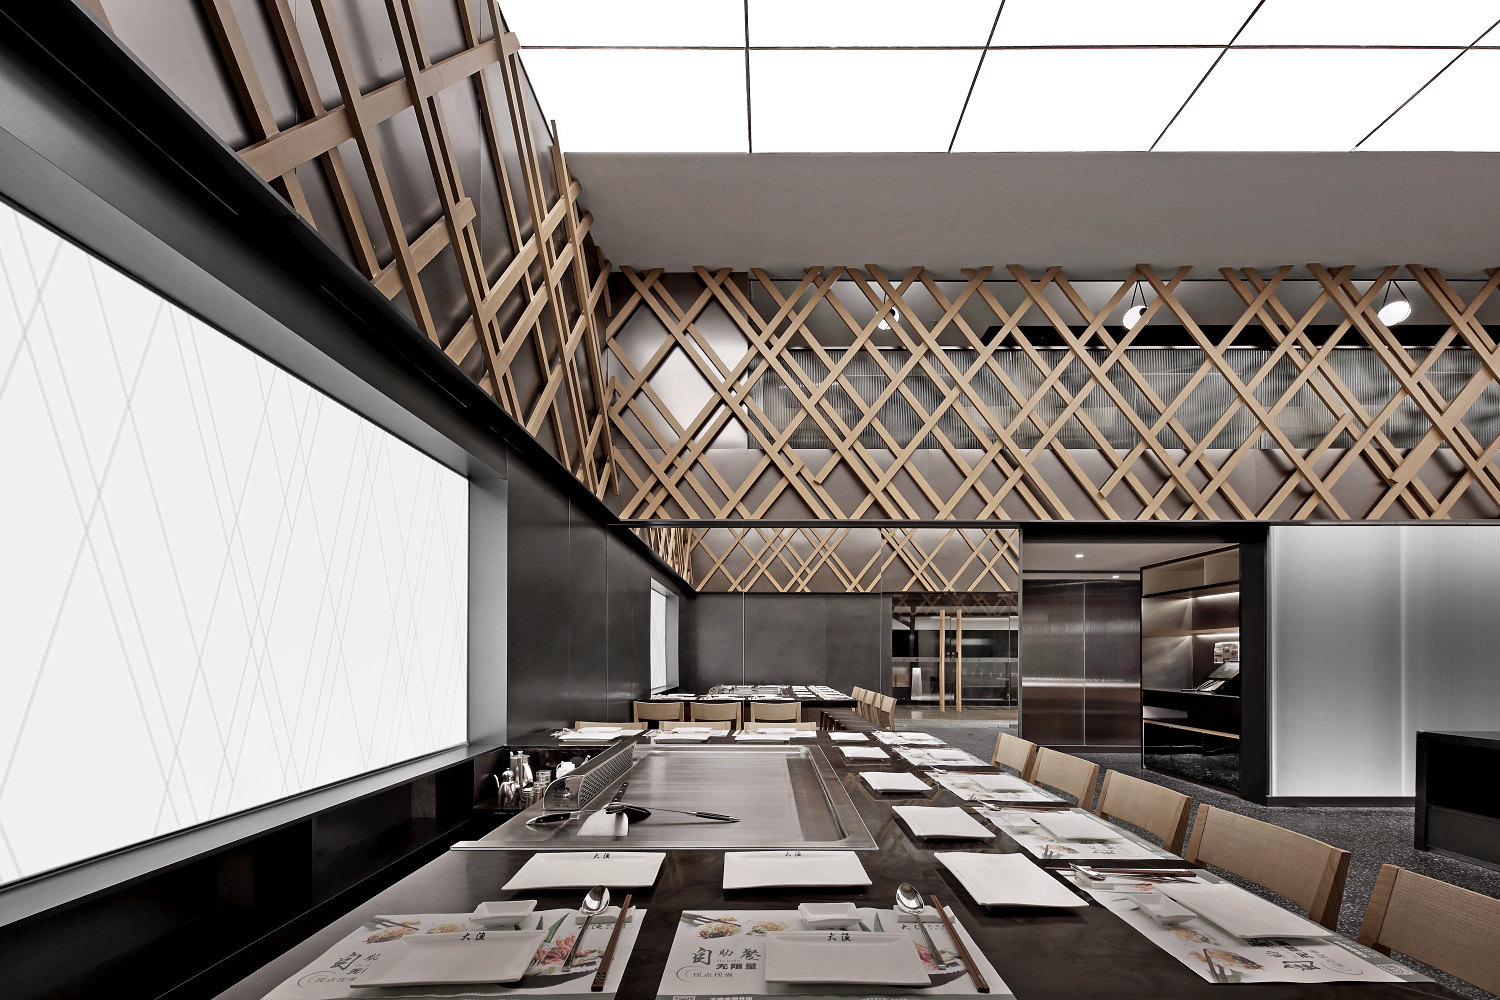 2个铁板烧空间设计案例诠释“铁板上叹为观止的美食汇演”